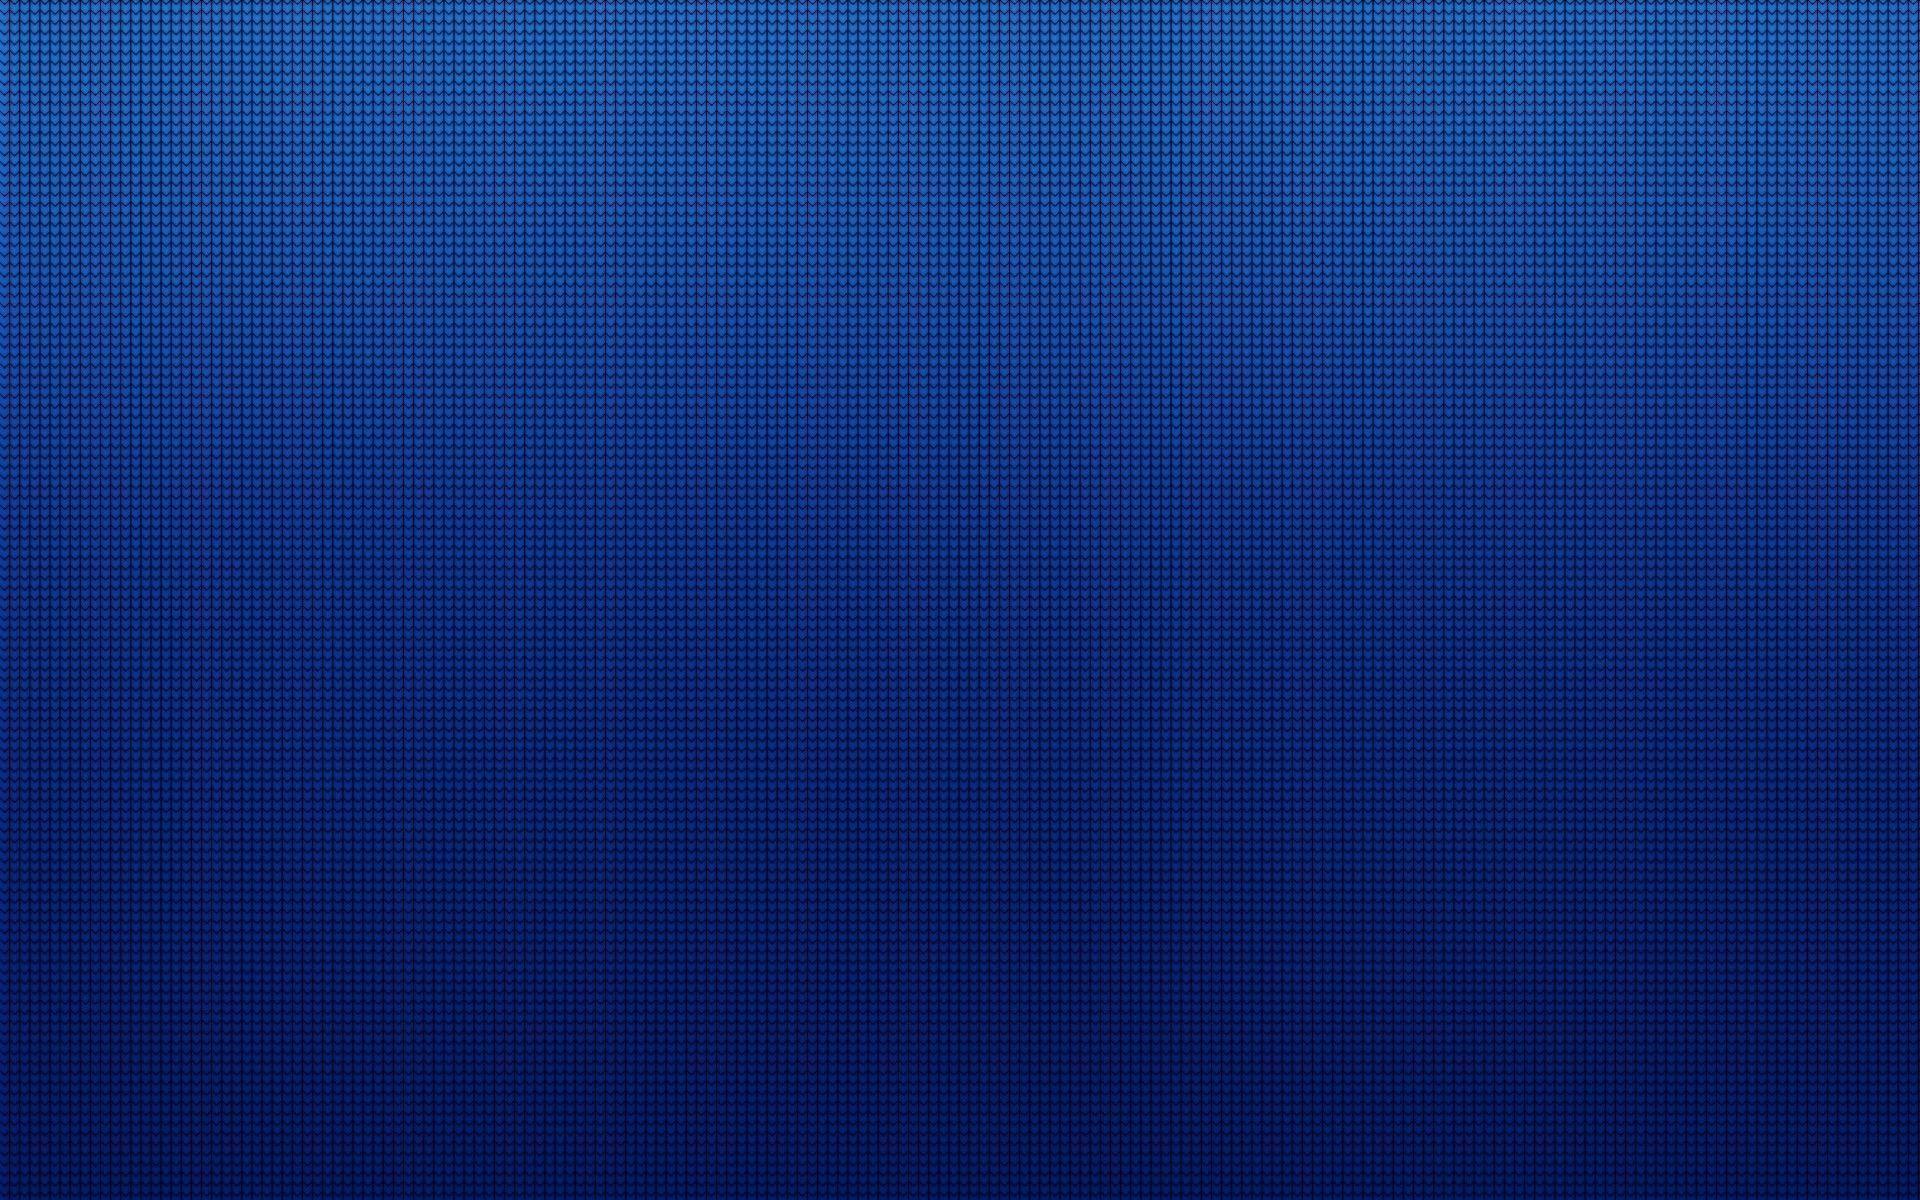 Dark Blue Background Image